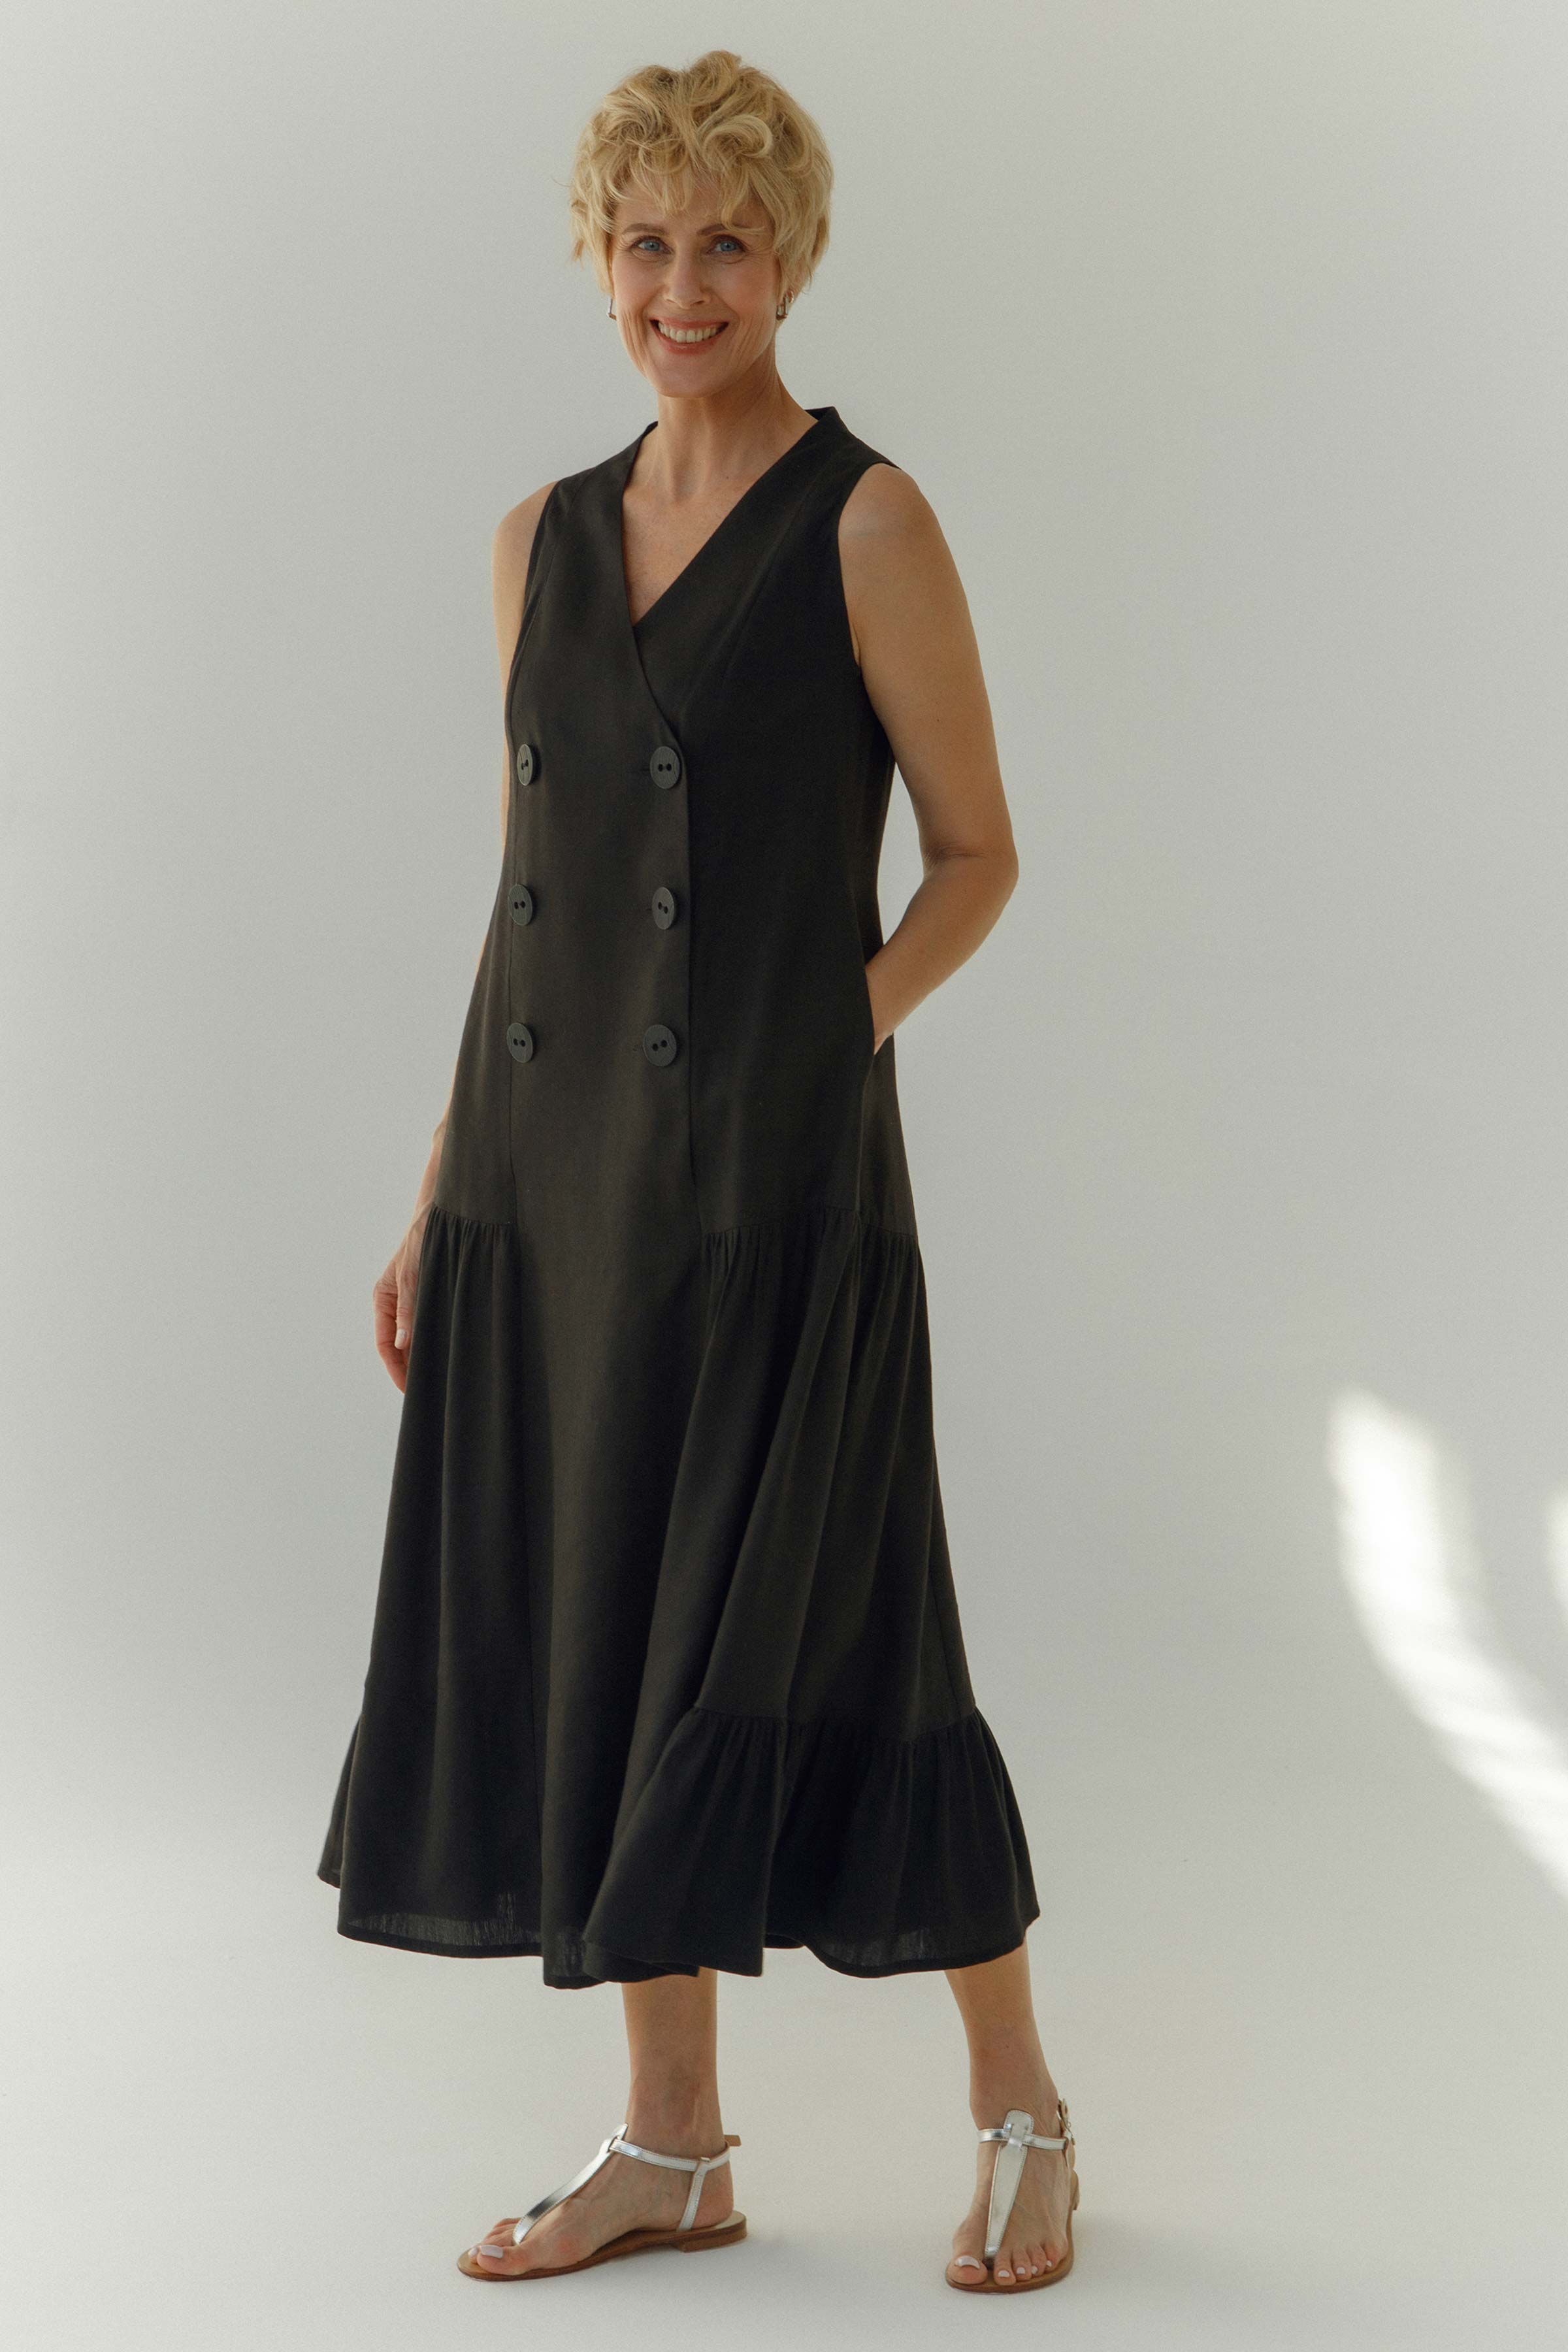 Платье Сарафан, лён 00 Черный (noir) от Lesel (Лесель)! Заказывайте по ✆ 8 (800) 777 02 37